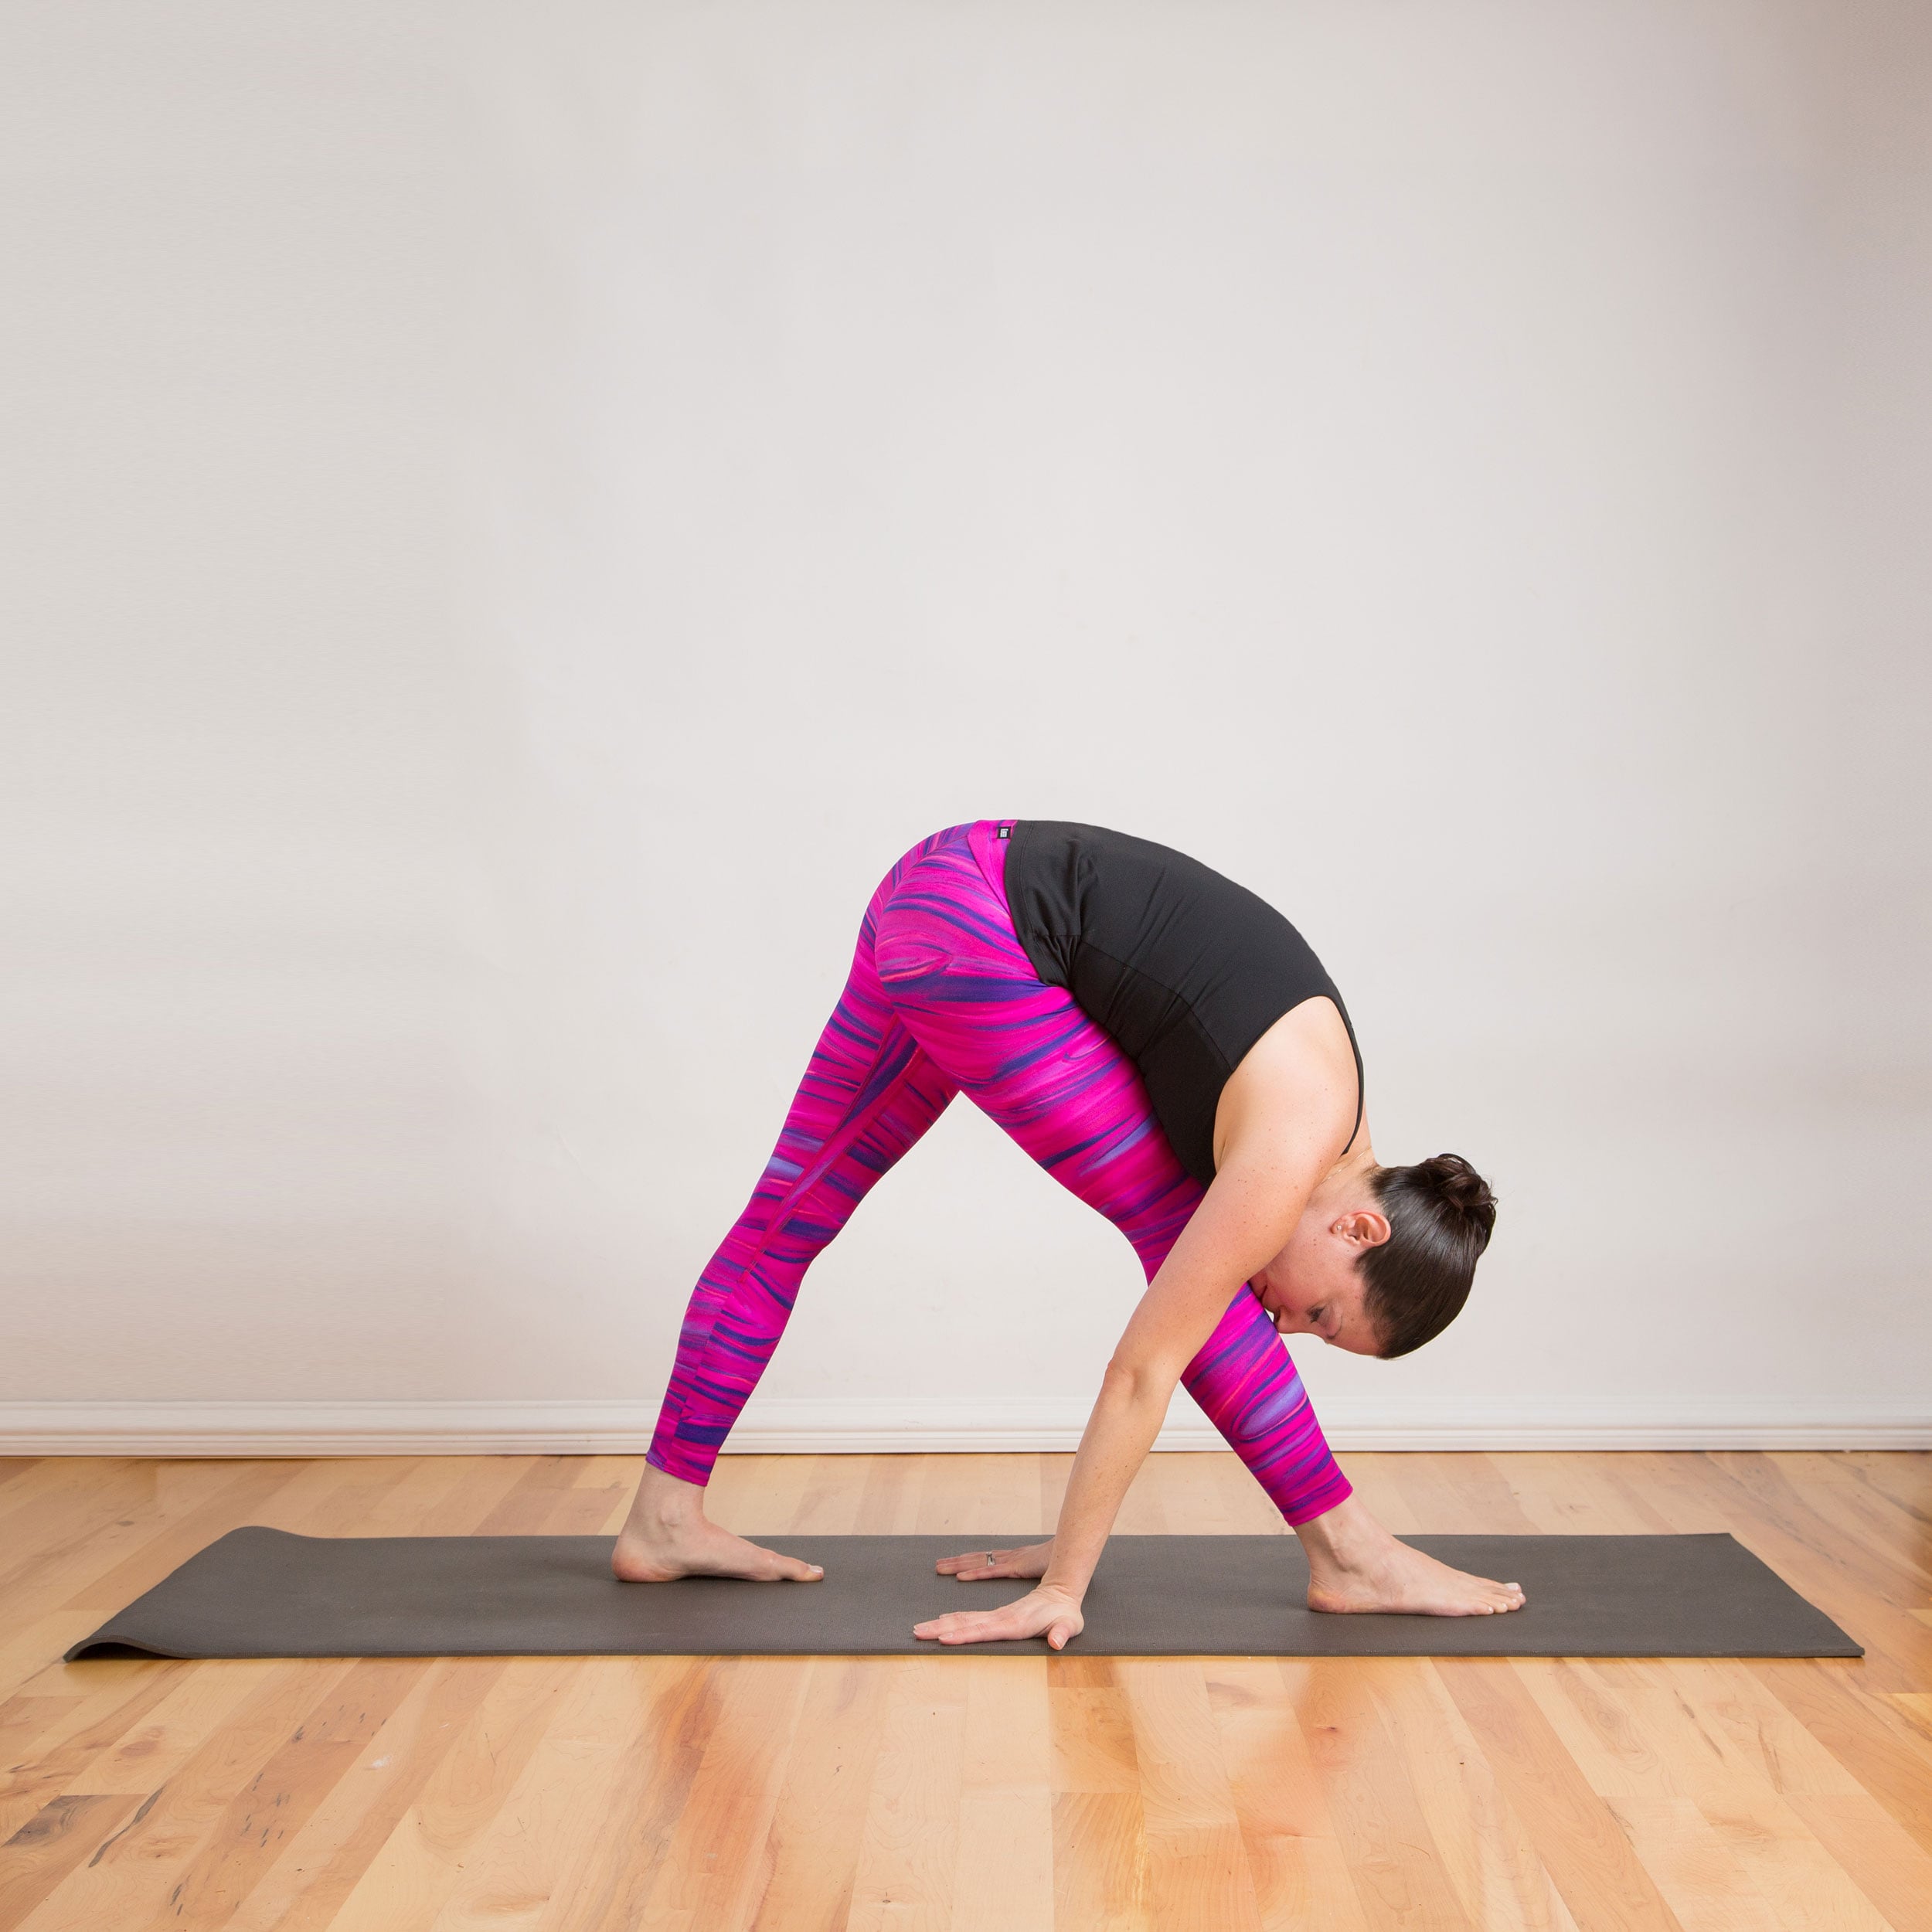 20 min Standing Yoga For Beginners, Back To Basics